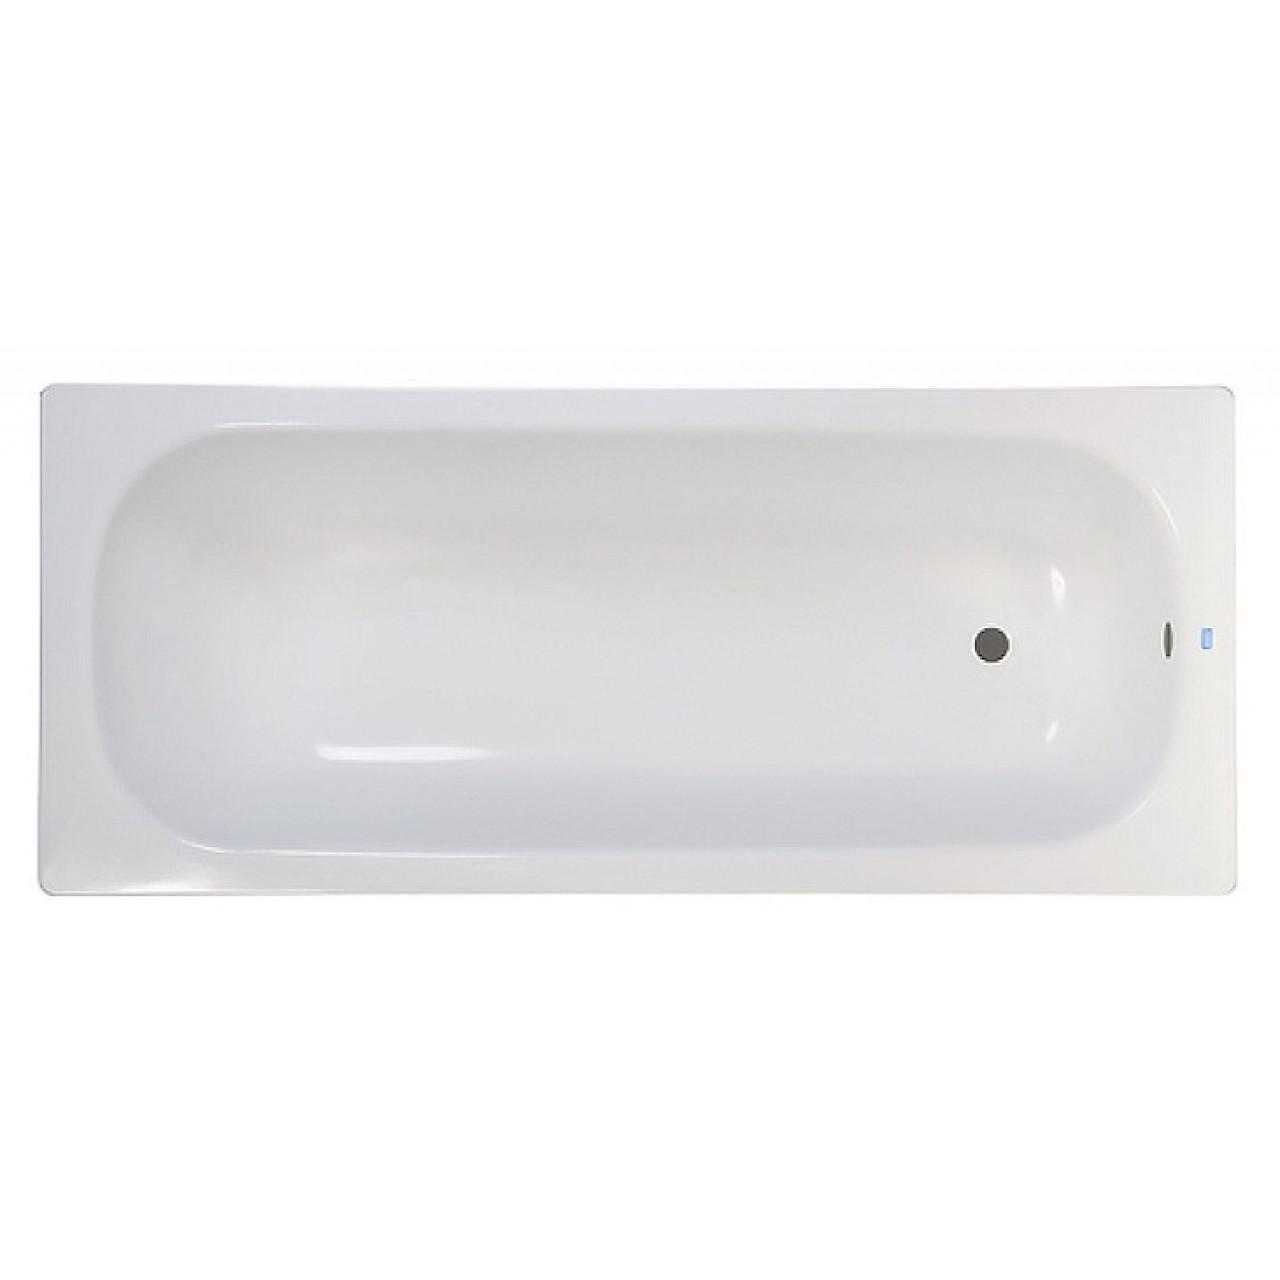 Стальная ванна ВИЗ Reimar 120 см R-24901 купить в Москве по цене от 14228р. в интернет-магазине mebel-v-vannu.ru